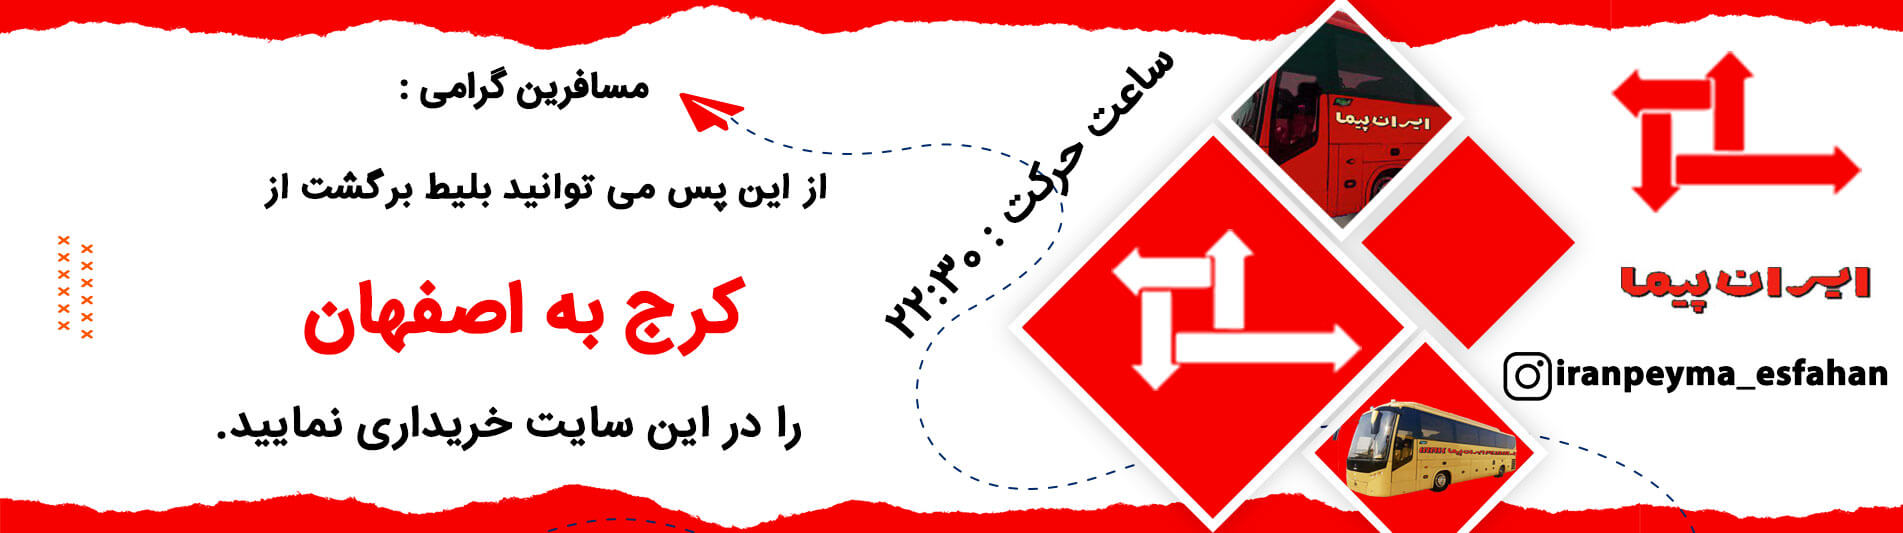 خرید بلیط اتوبوس ایران پیما